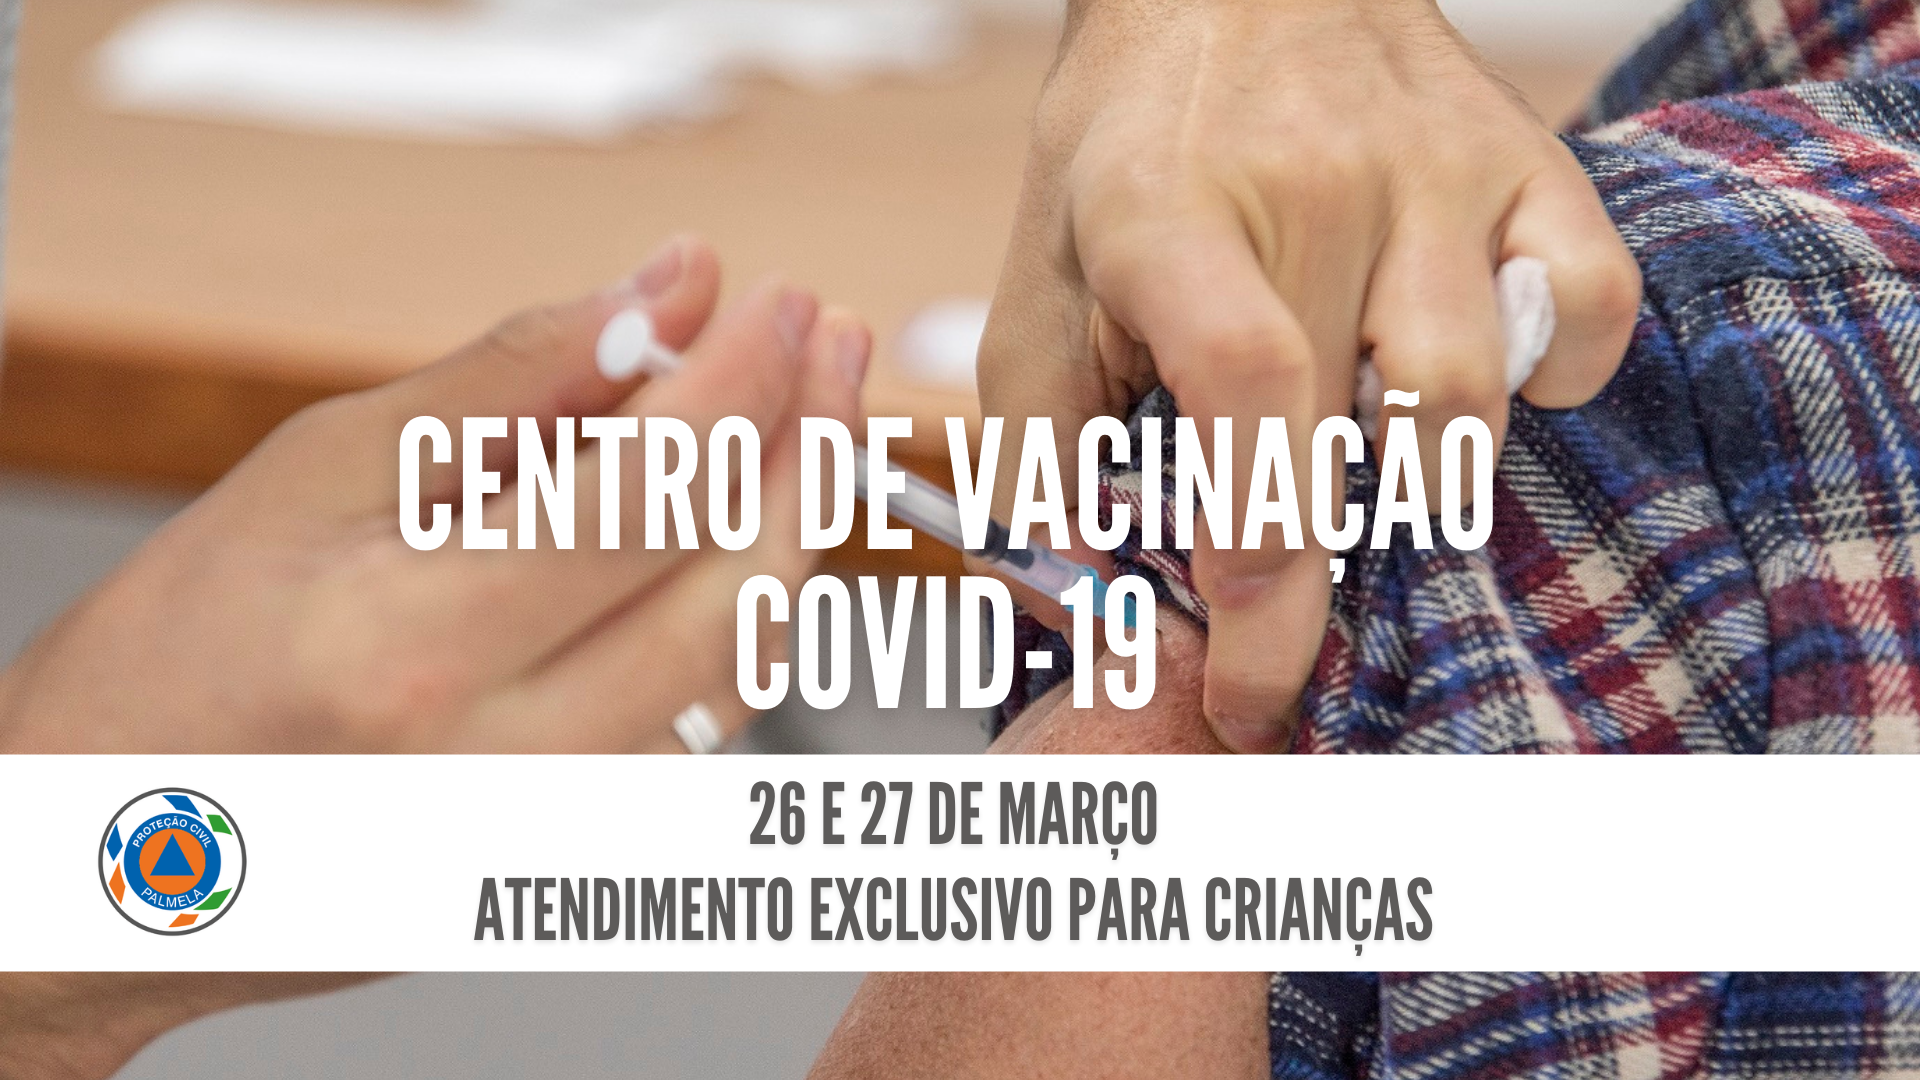 Centro de Vacinação COVID-19/Pinhal Novo: atendimento exclusivo para crianças a 26 e 27 março